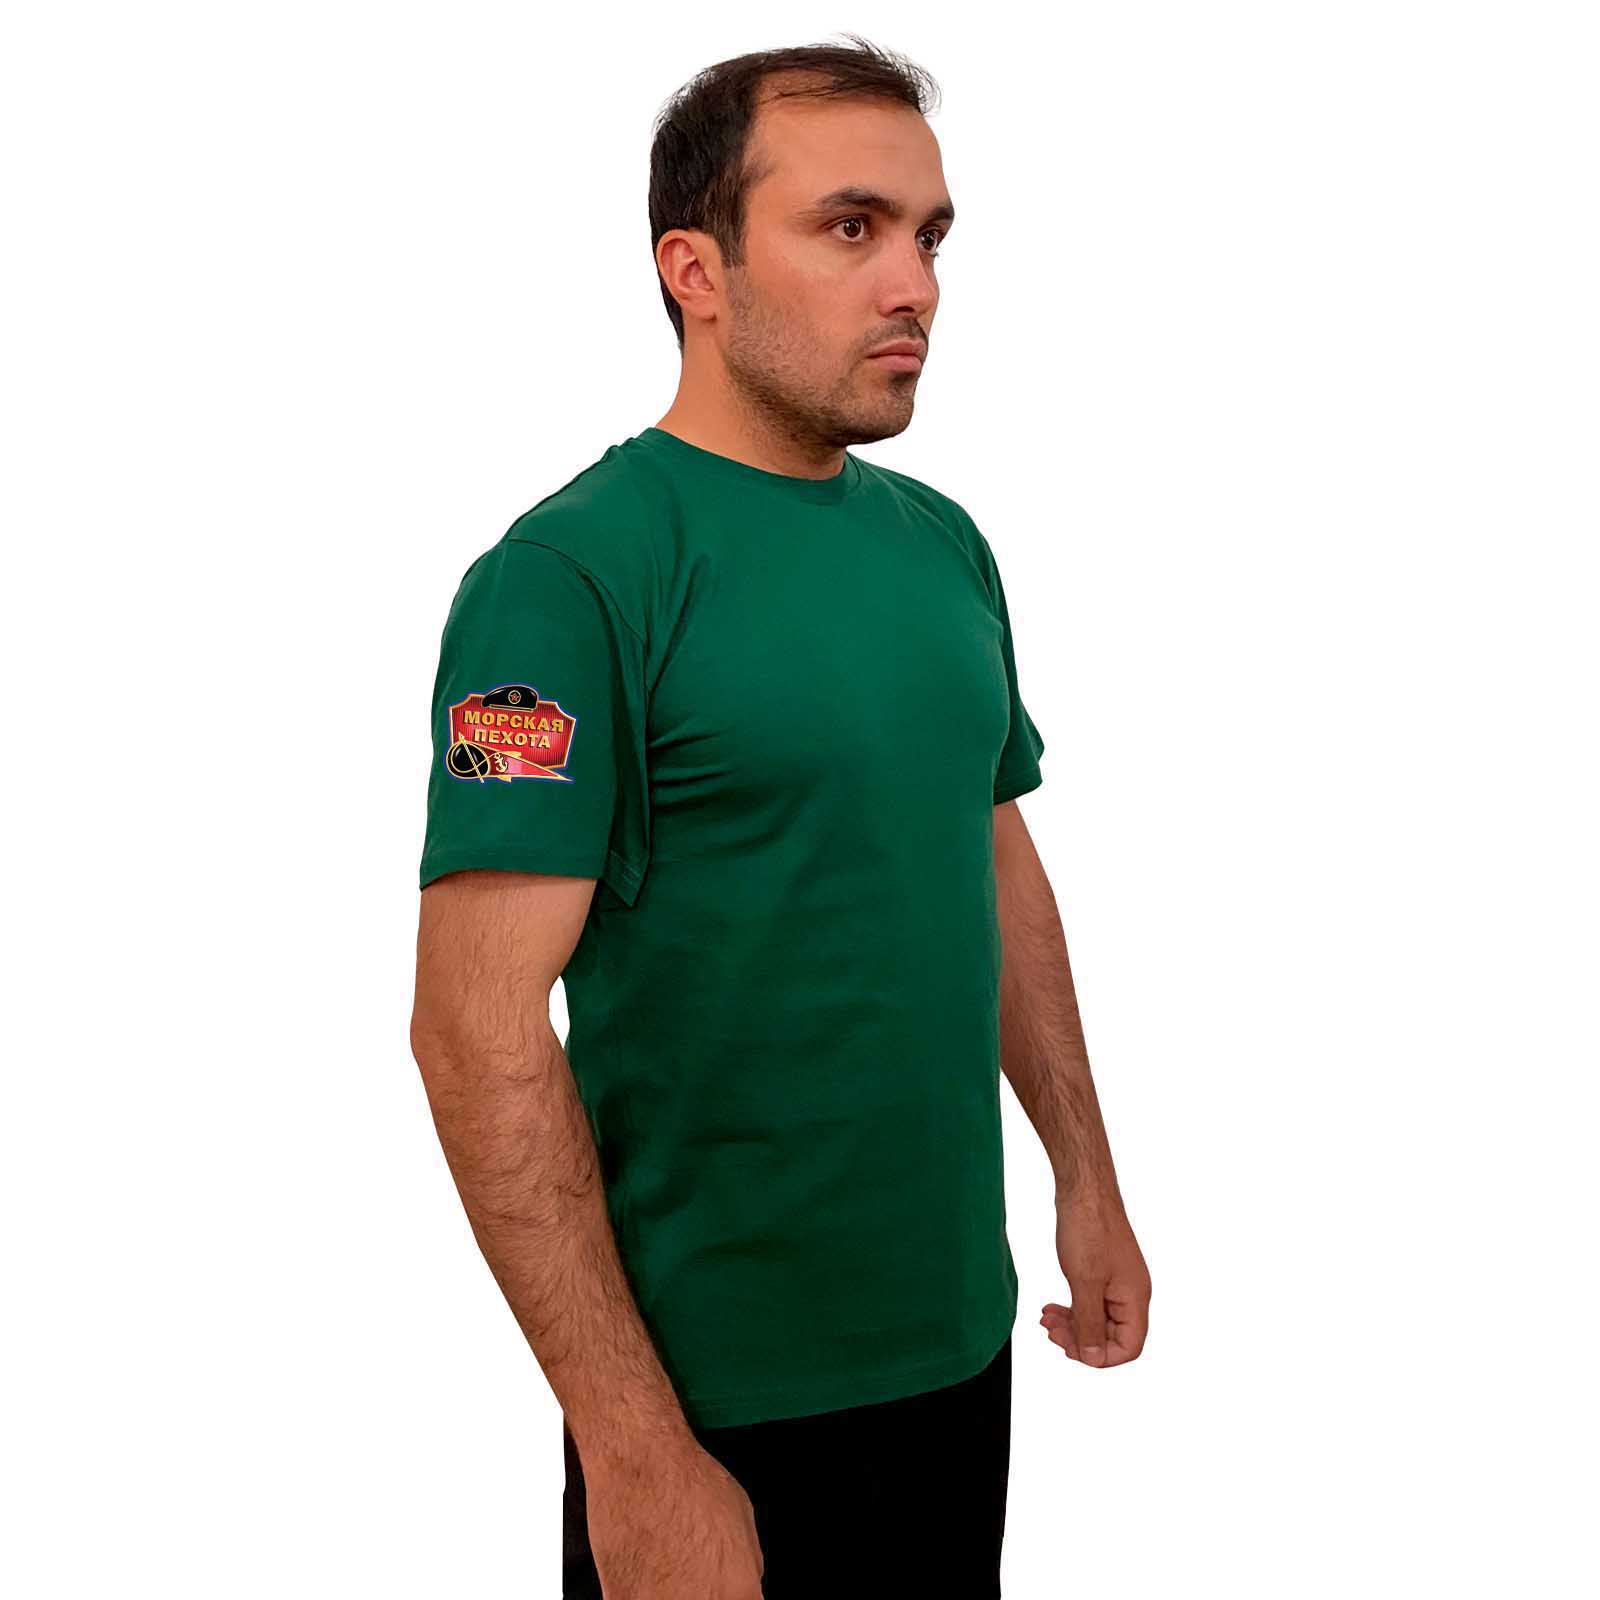 Зелёная футболка с термотрансфером "Морская пехота" на рукаве